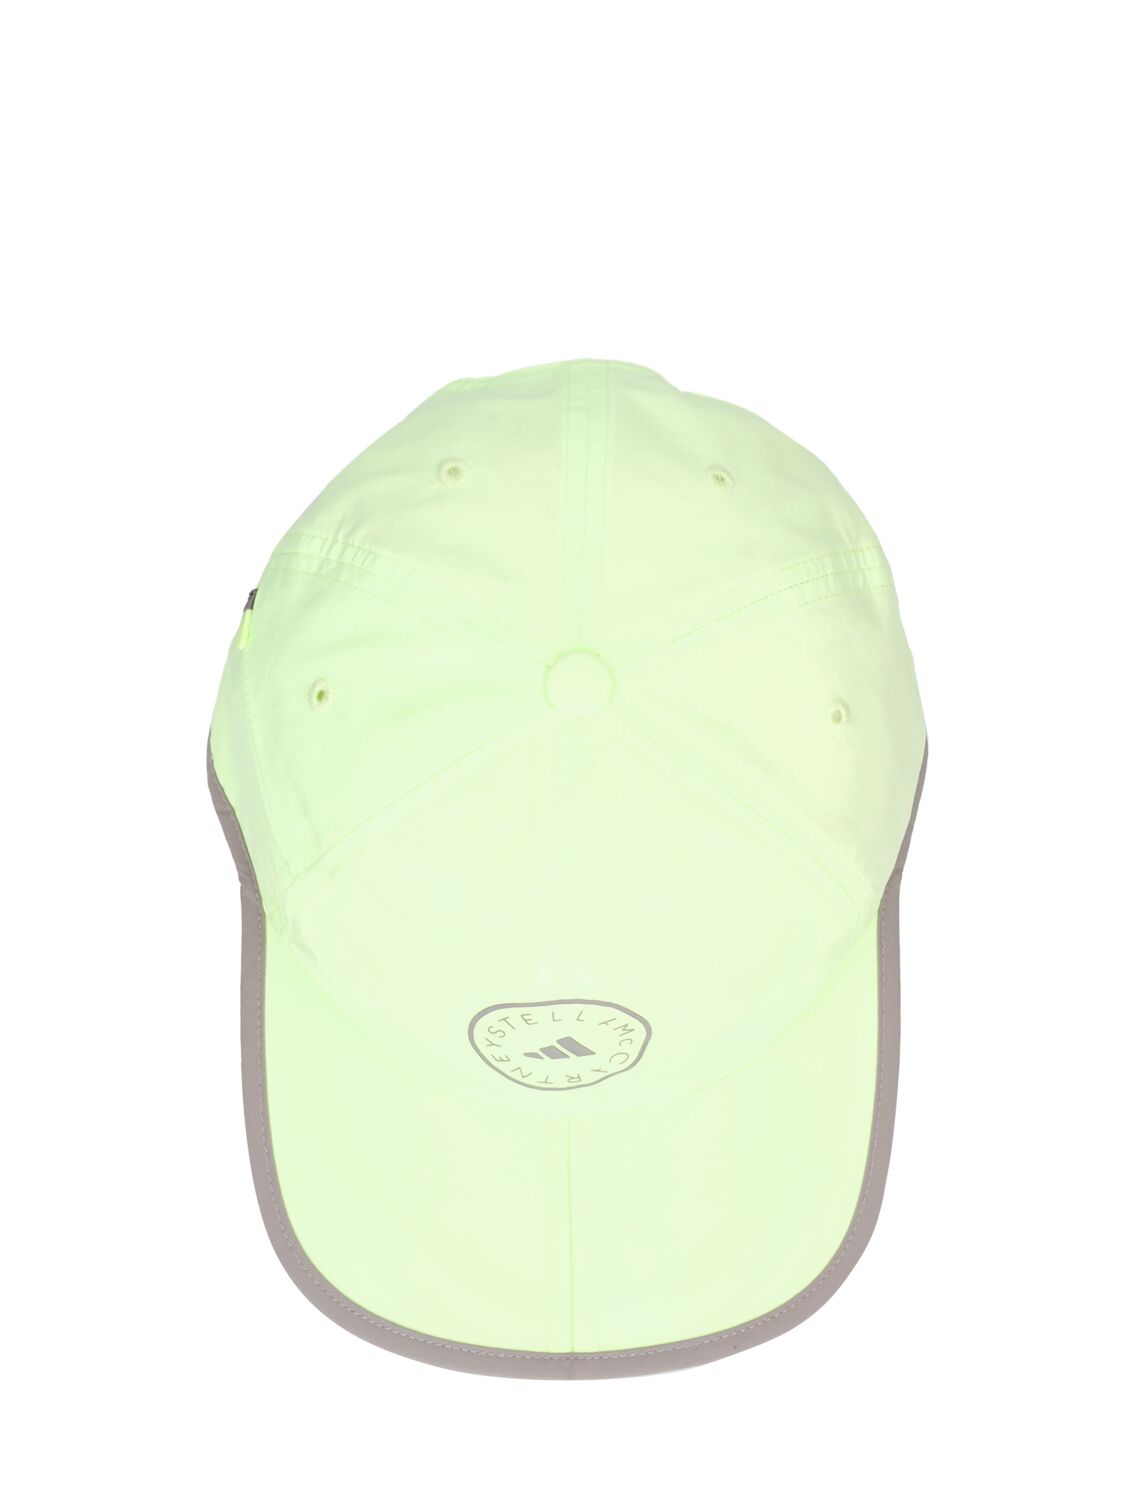 Shop Adidas By Stella Mccartney Asmc Baseball Cap W/ Logo In Lime Green